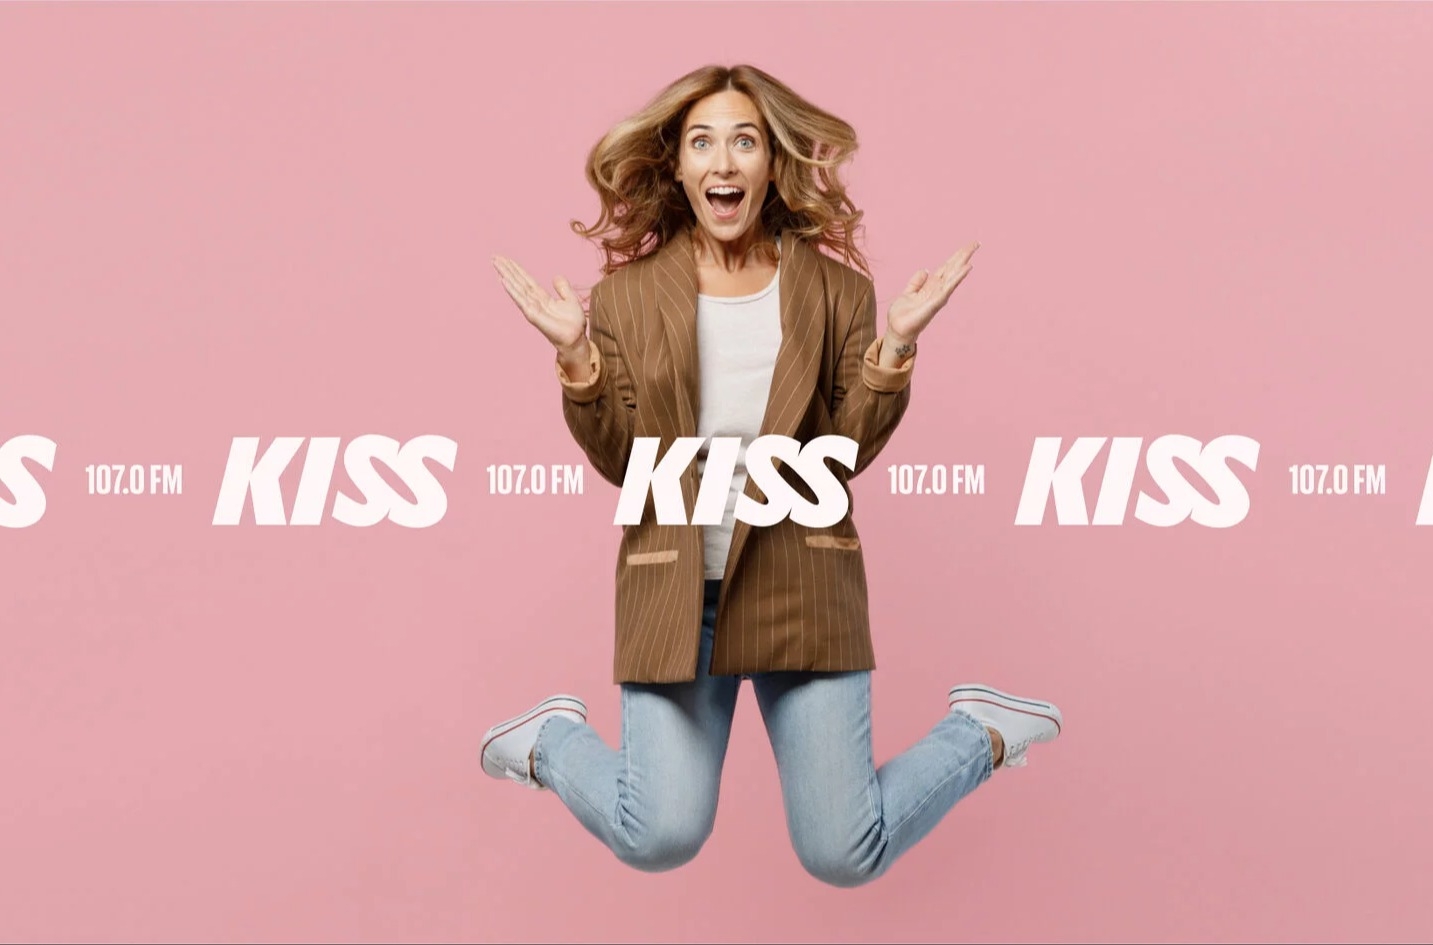 KISS FM новое музыкальное радио для женщин на волне 107.0 FM